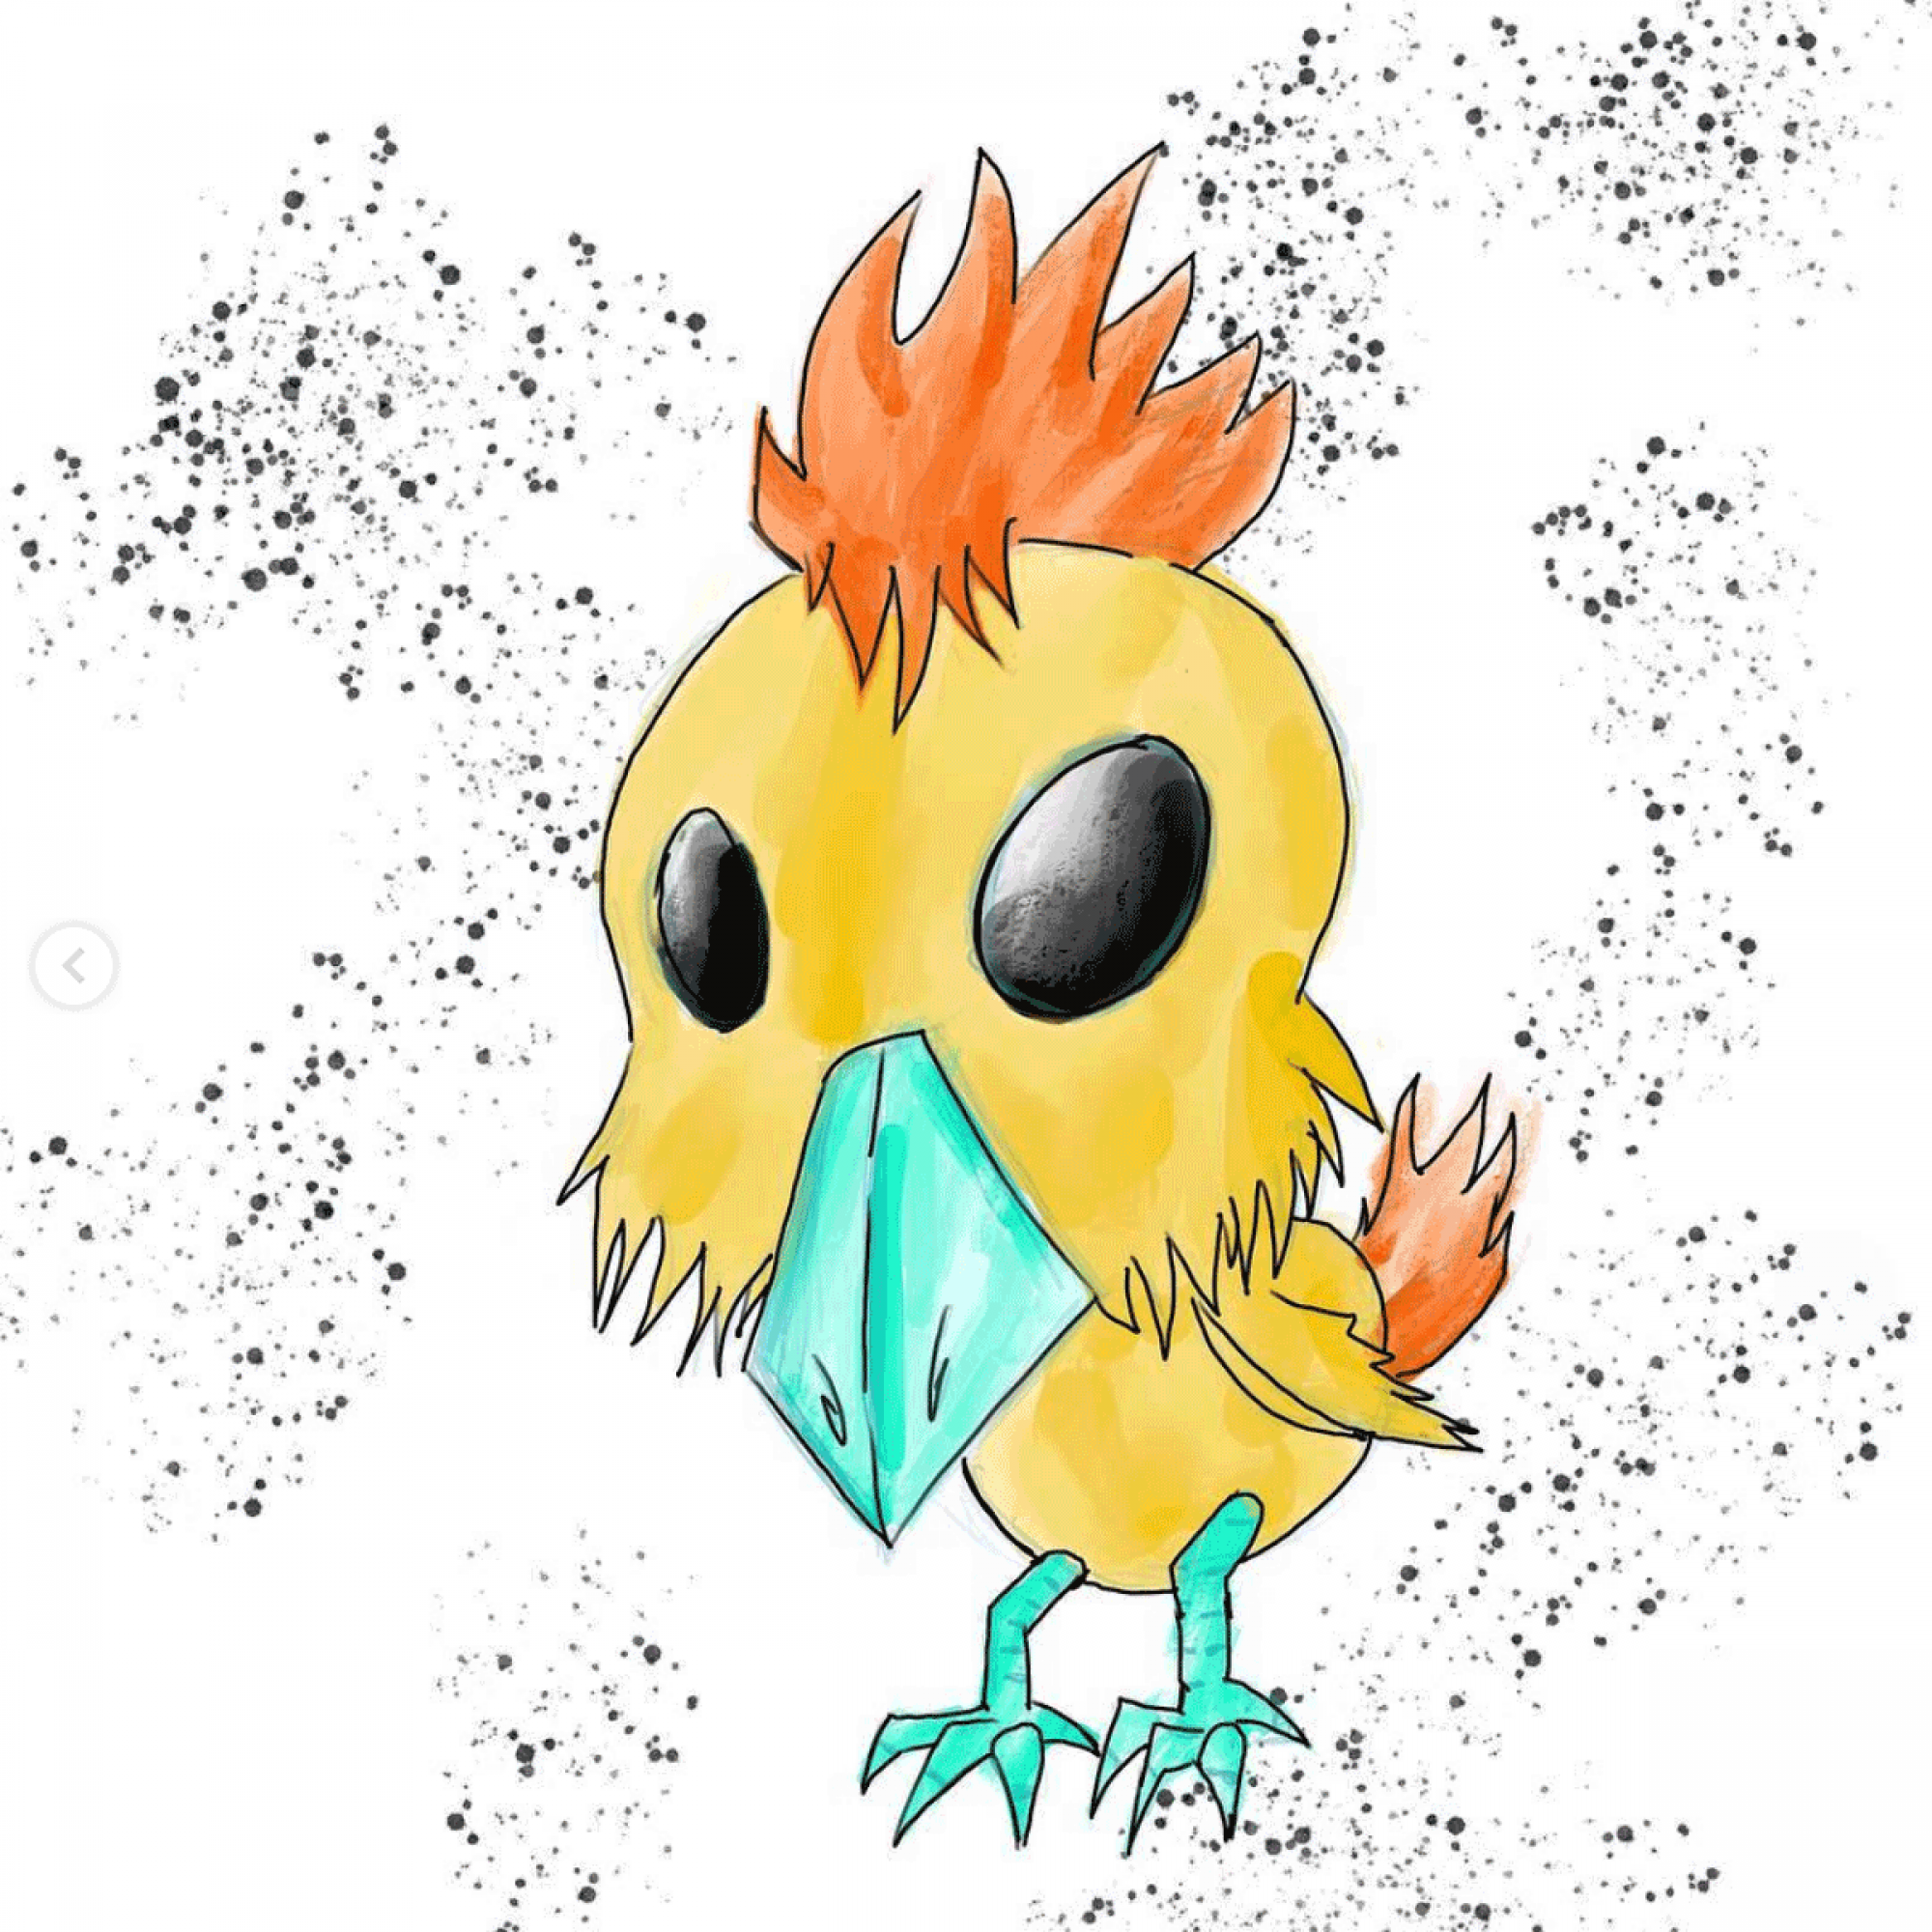 A hand drawn chicken creature